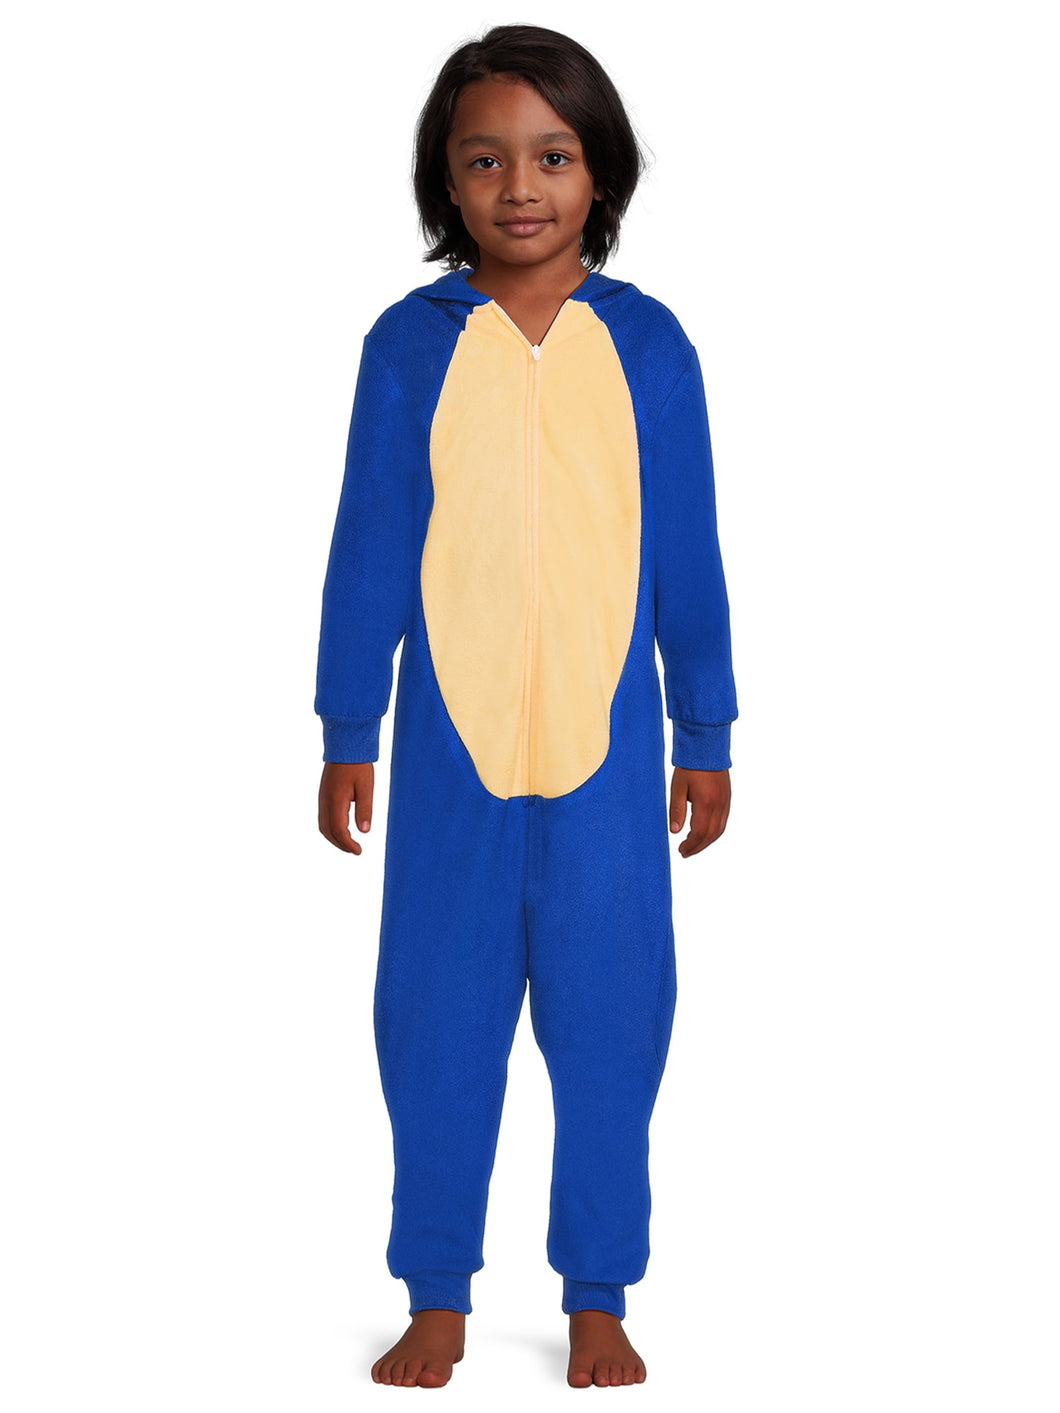 Sonic the Hedgehog Boys Union Suit, Sizes 4-12